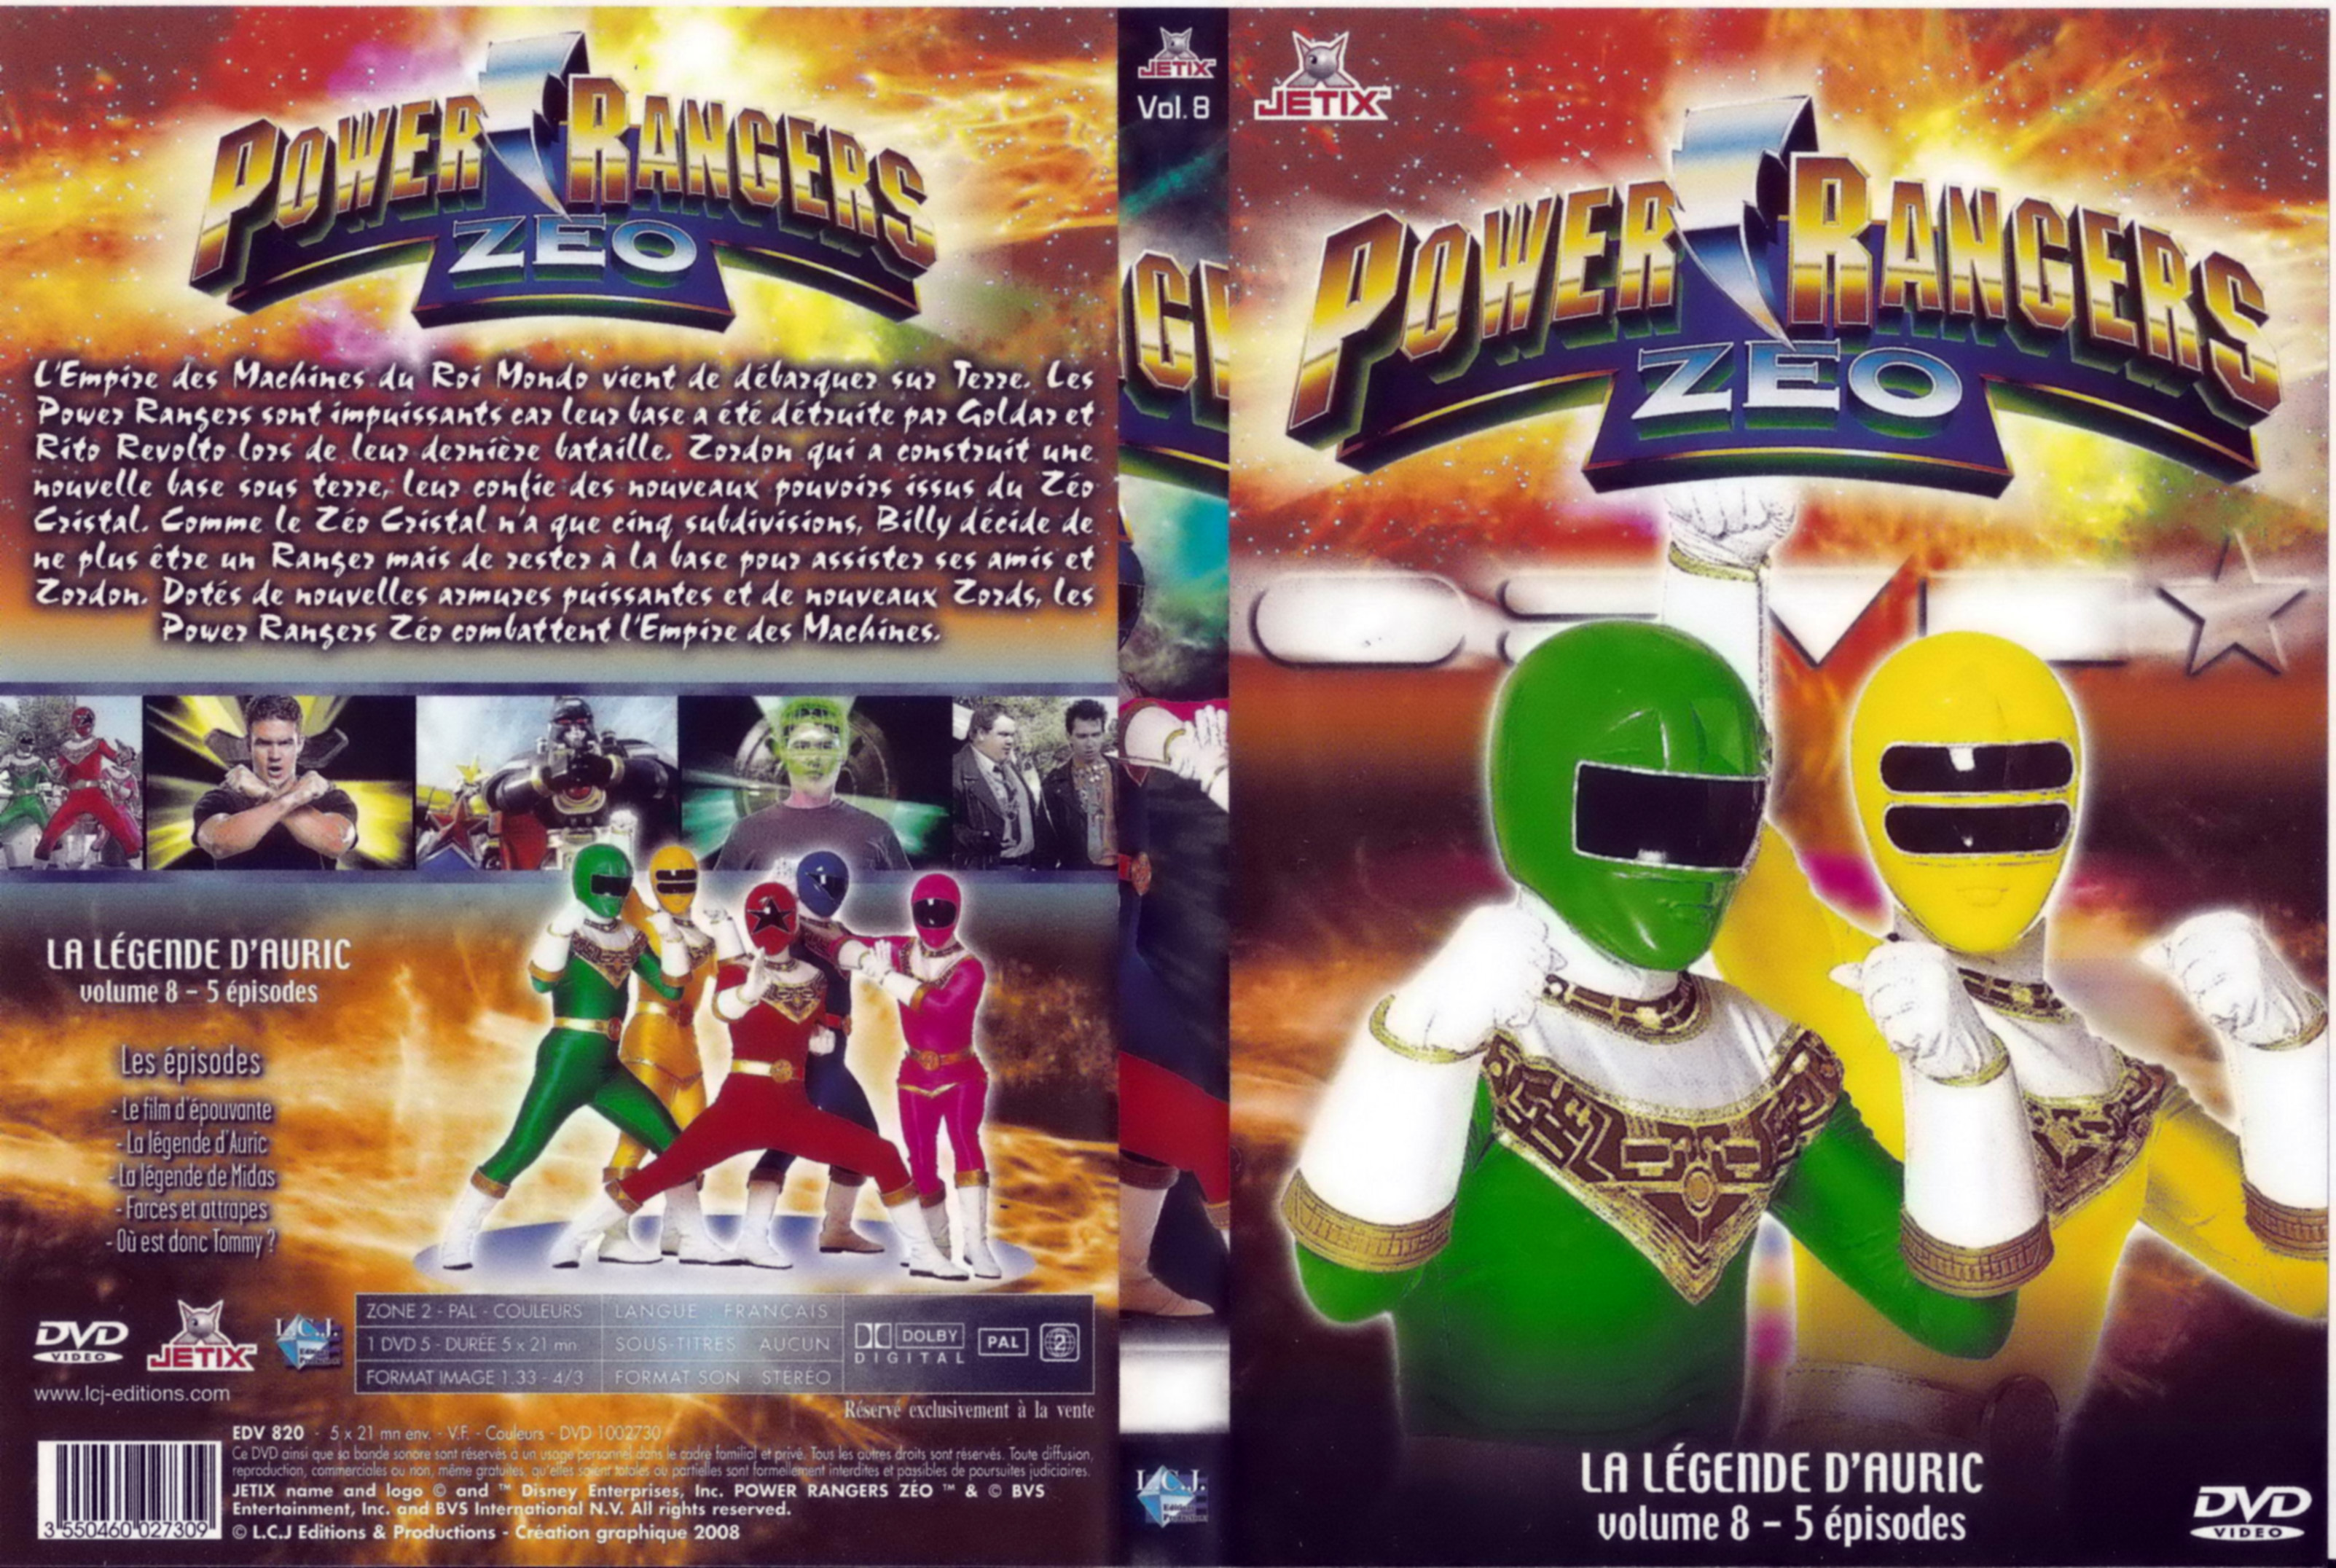 Jaquette DVD Power rangers zeo vol 8